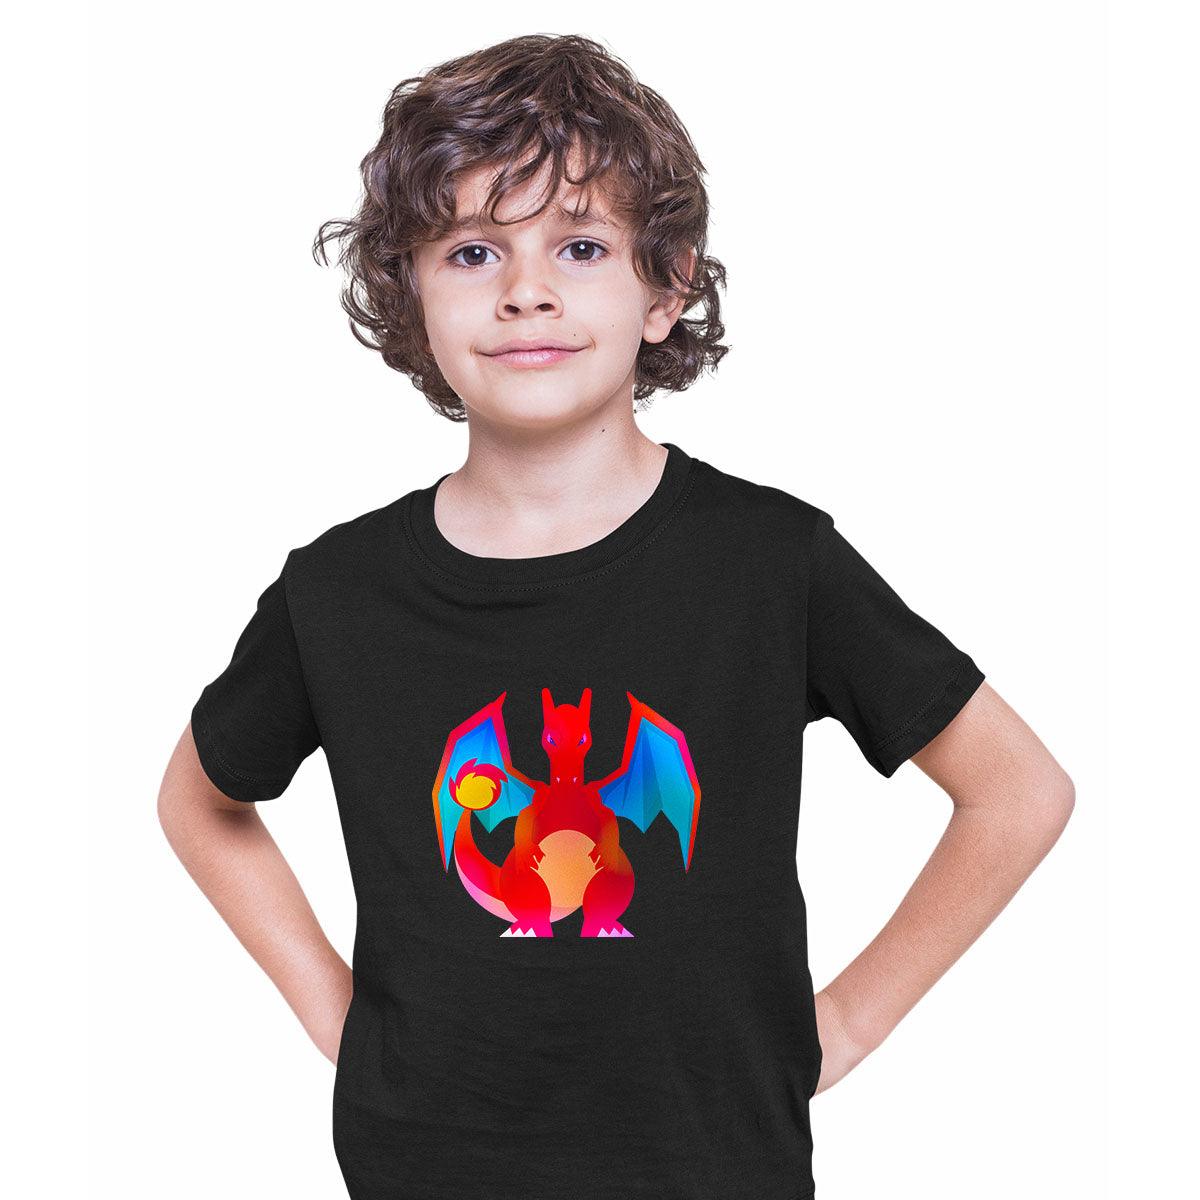 Charizard Pokemon Go T-shirt for Kids Boys Girls Brand New - Kuzi Tees